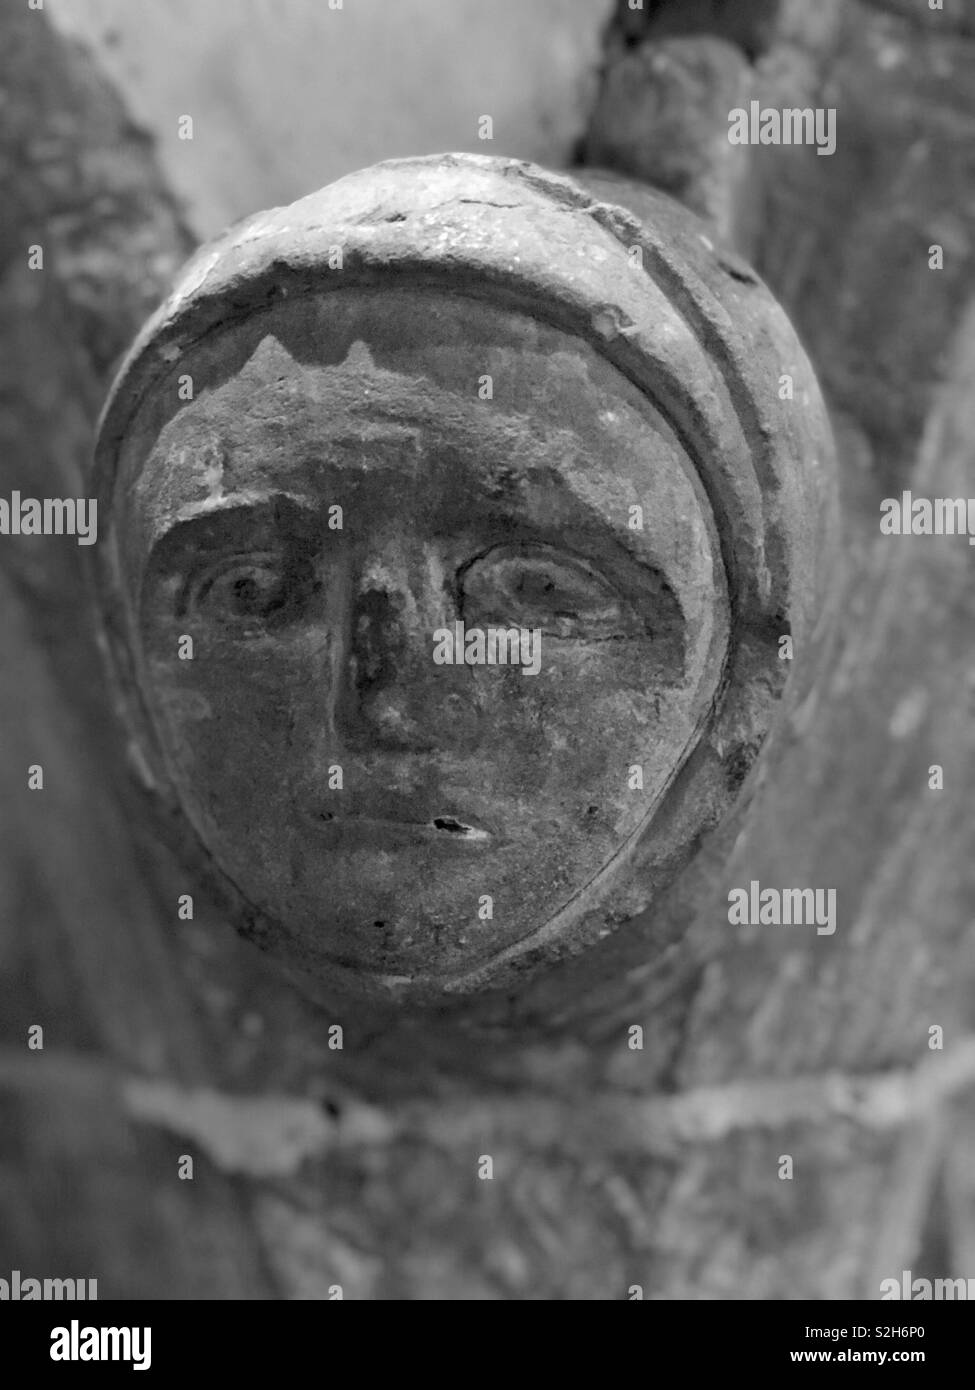 Eine traurige und Verschieben von 13. oder 14. Jahrhundert Skulptur wahrscheinlich die Reue und die Sünde und die Figur hat ein vergrößertes Auge eine offensichtliche Behinderung auch in Porträts von Edward 1 gesehen. Stockfoto